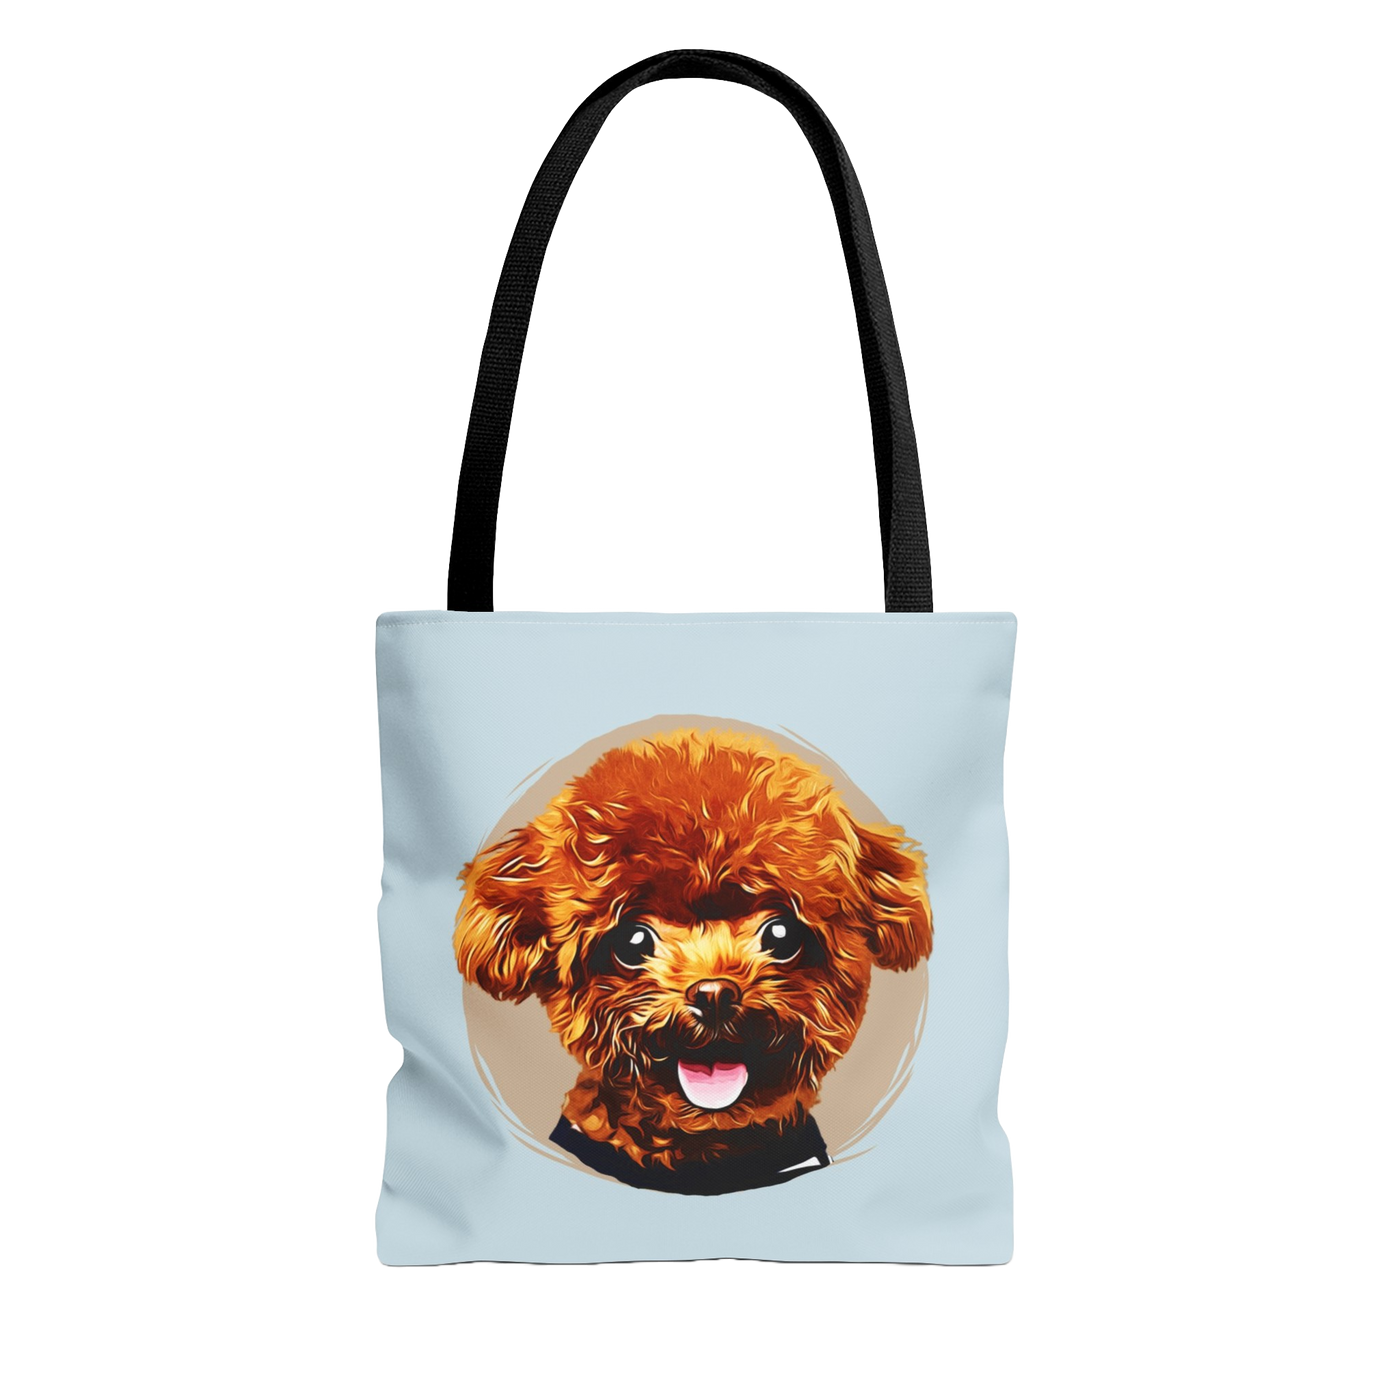 Custom Pet Tote Bag